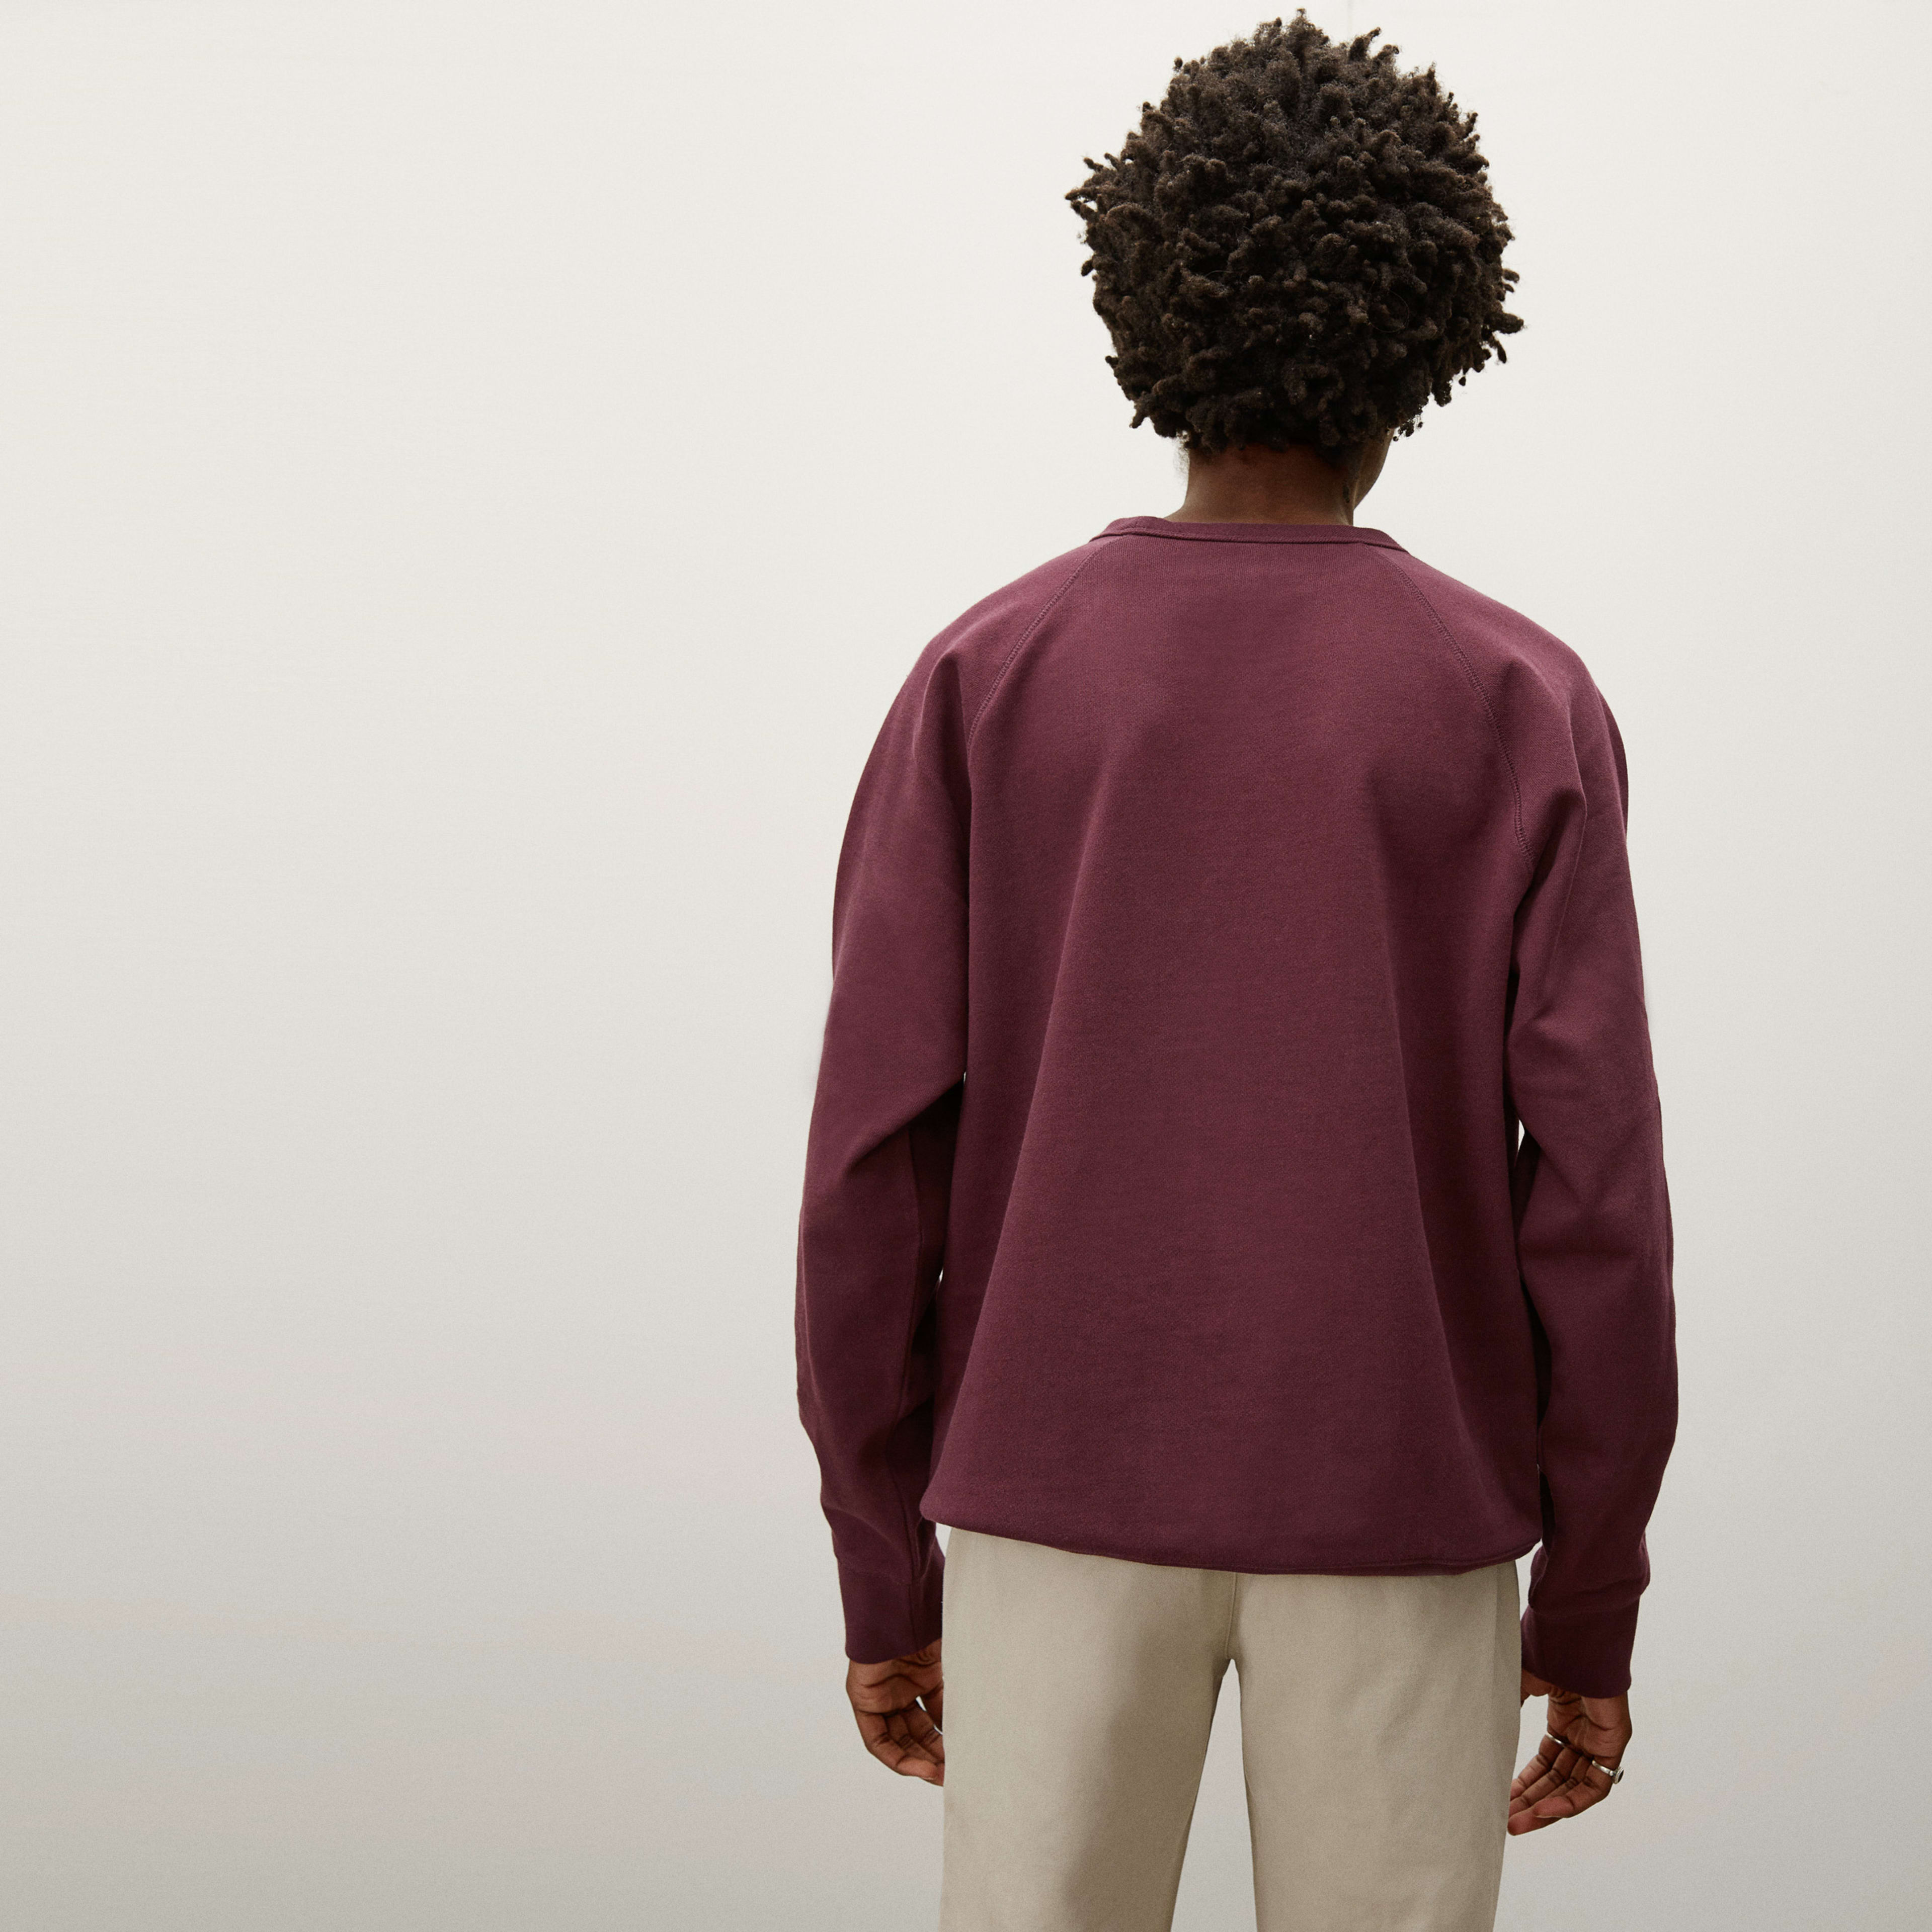 The 100% Human Typography Sweatshirt Burgundy / Pink – Everlane